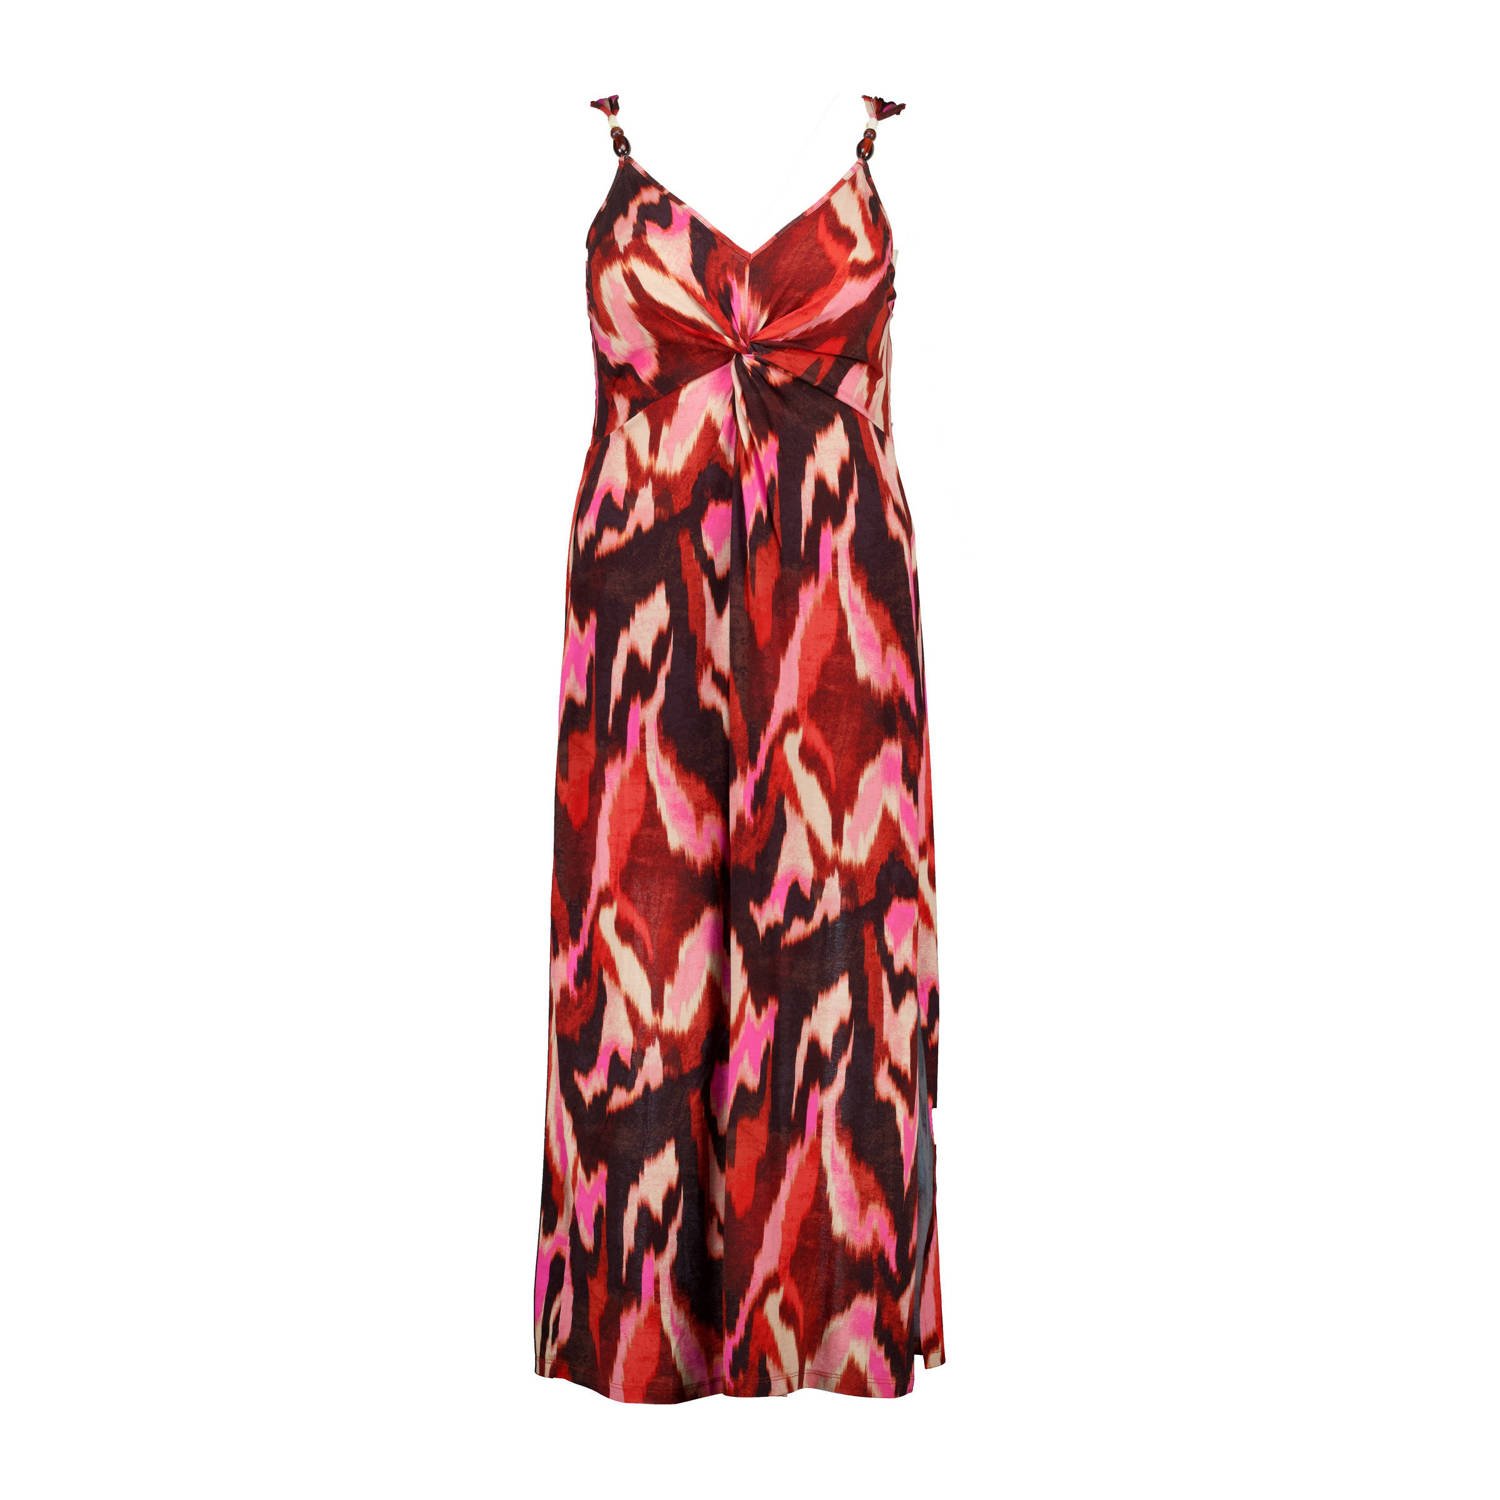 MS Mode jurk met all over print rood ecru roze